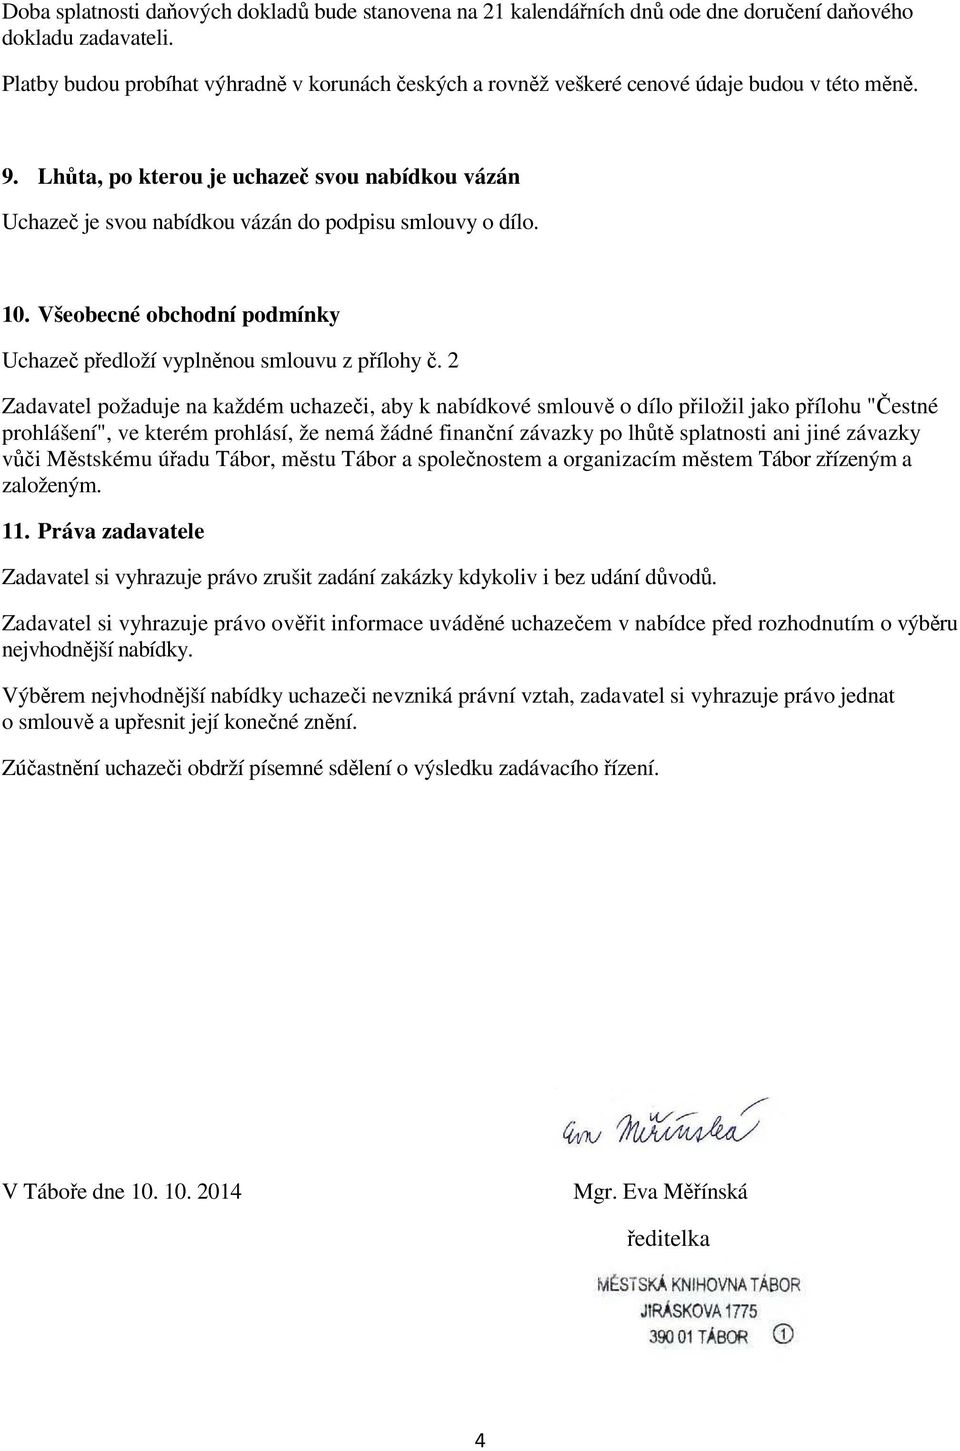 Lhůta, po kterou je uchazeč svou nabídkou vázán Uchazeč je svou nabídkou vázán do podpisu smlouvy o dílo. 10. Všeobecné obchodní podmínky Uchazeč předloží vyplněnou smlouvu z přílohy č.